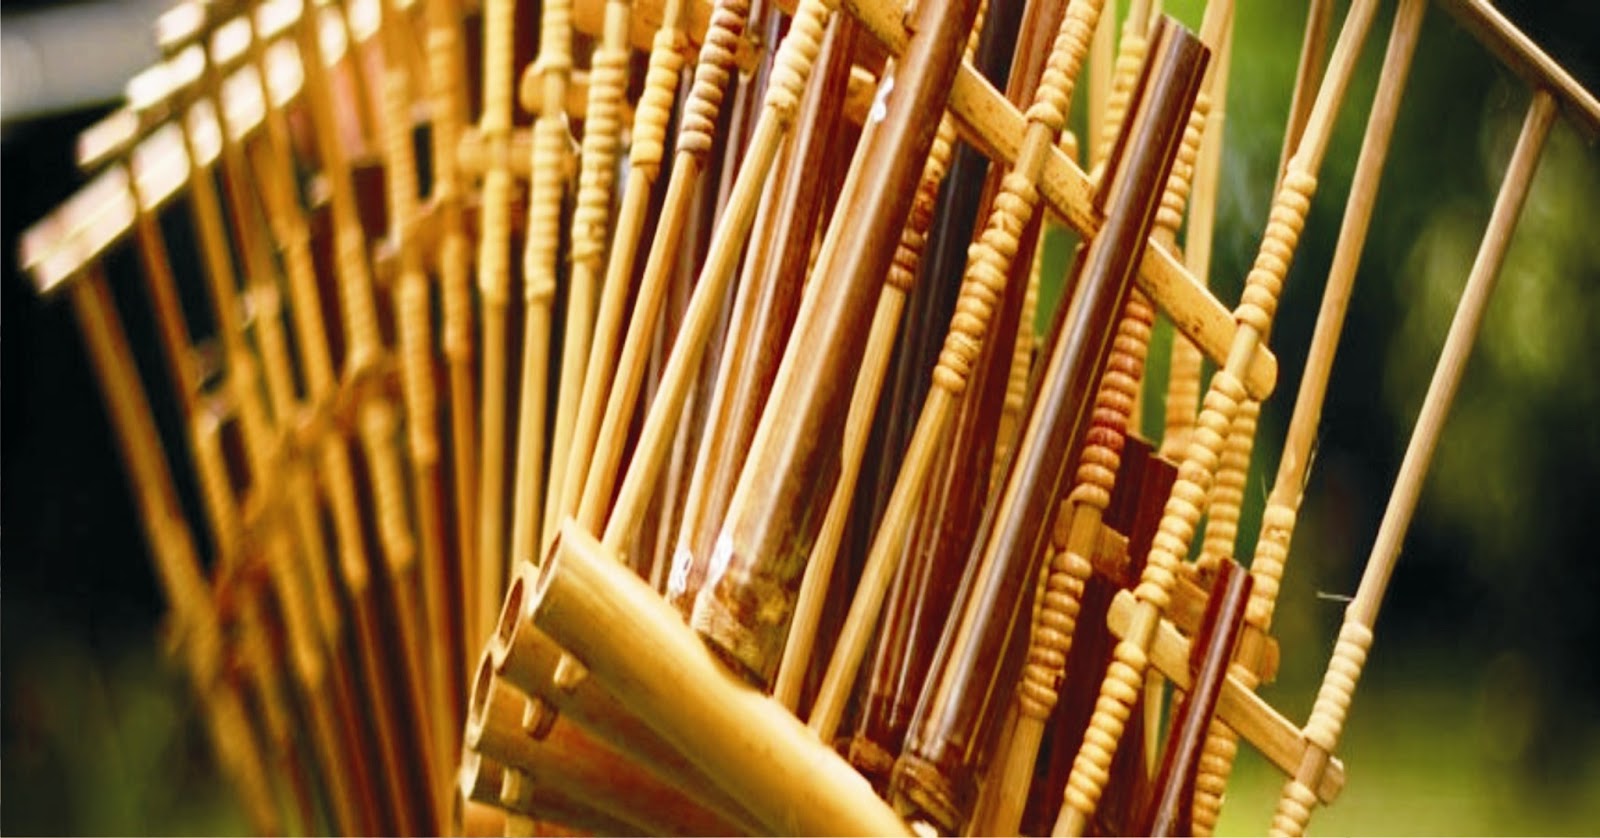 kerajinan tangan dari bambu